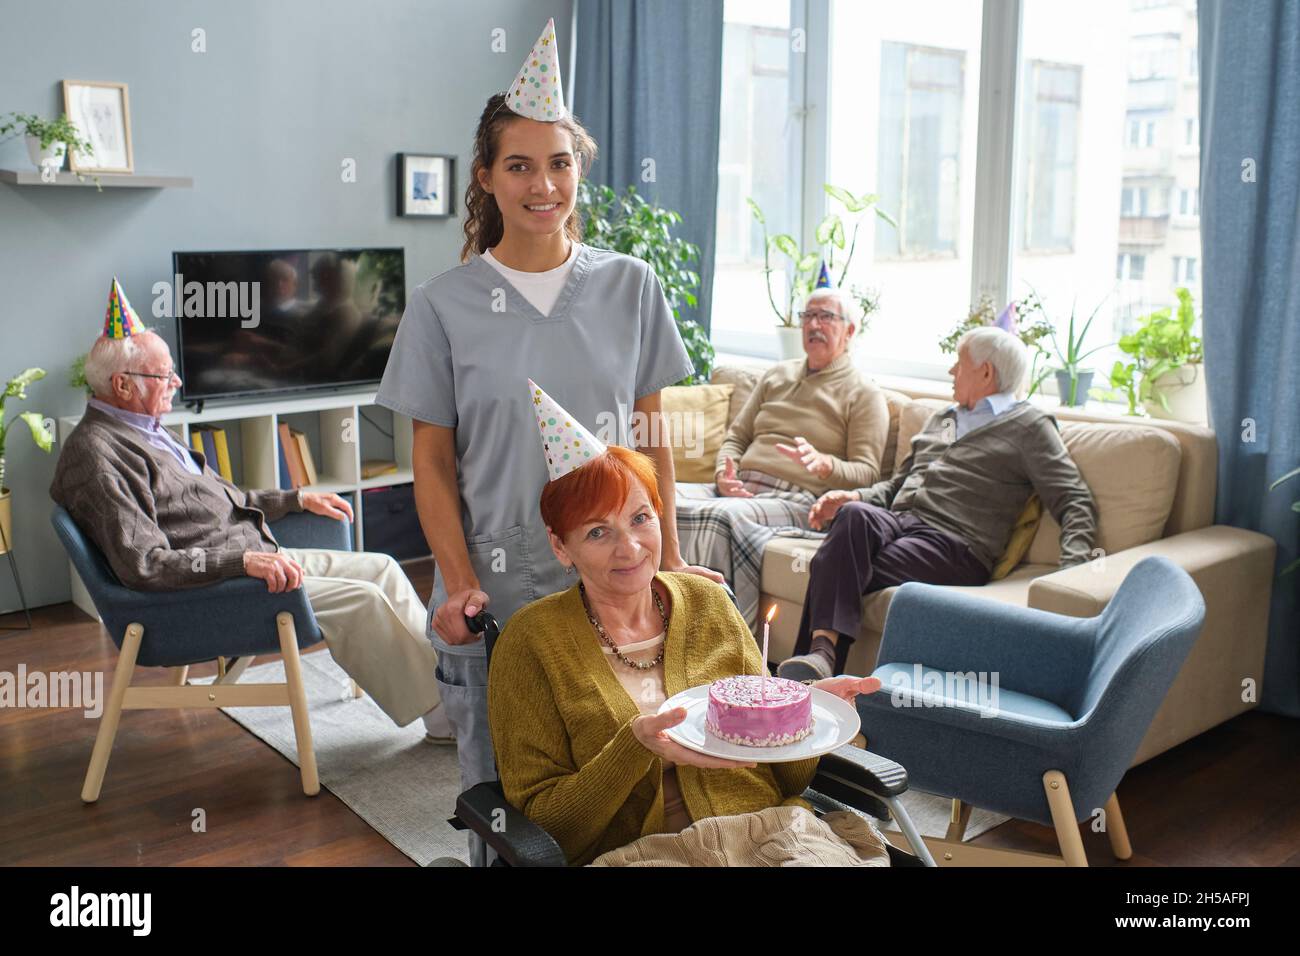 Porträt einer älteren Frau, die im Rollstuhl sitzt und die Kamera anlächelt und einen Geburtstagskuchen hält, während die Krankenschwester hinter ihr steht und im Pflegeheim Geburtstag feiert Stockfoto